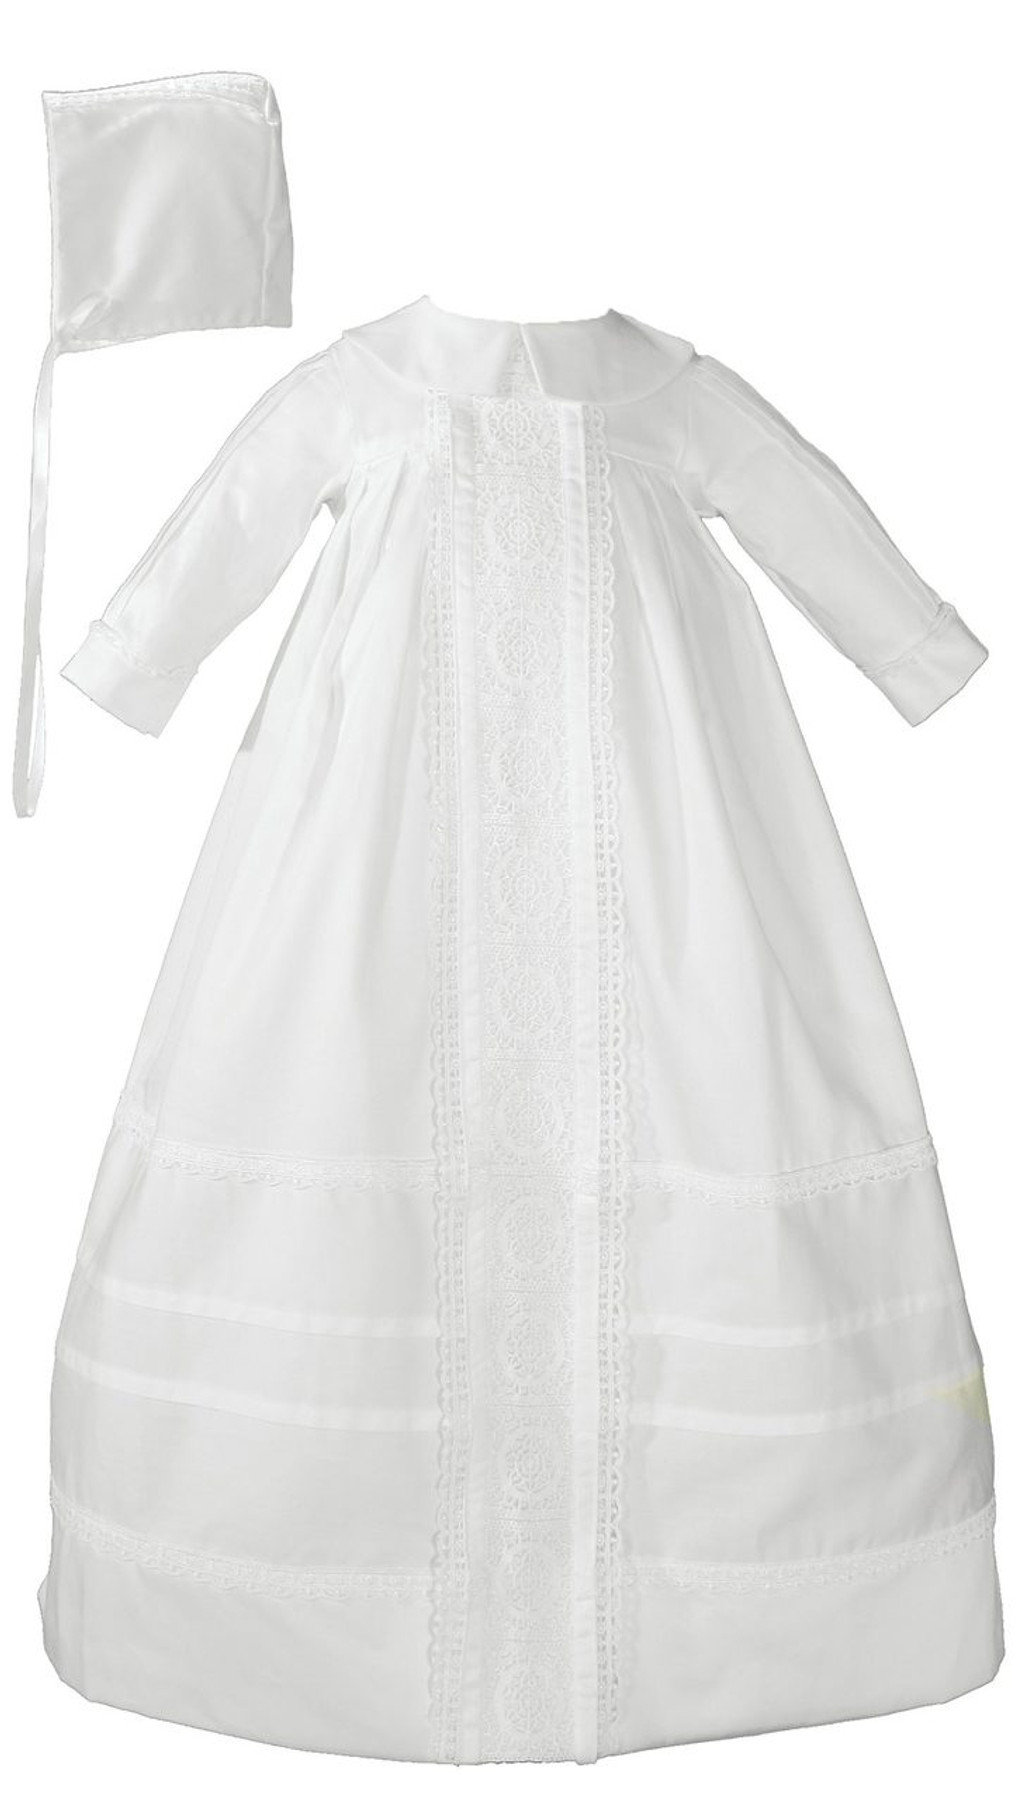 Buy Baptism Dress For Boy Online in India | Baptism Dress